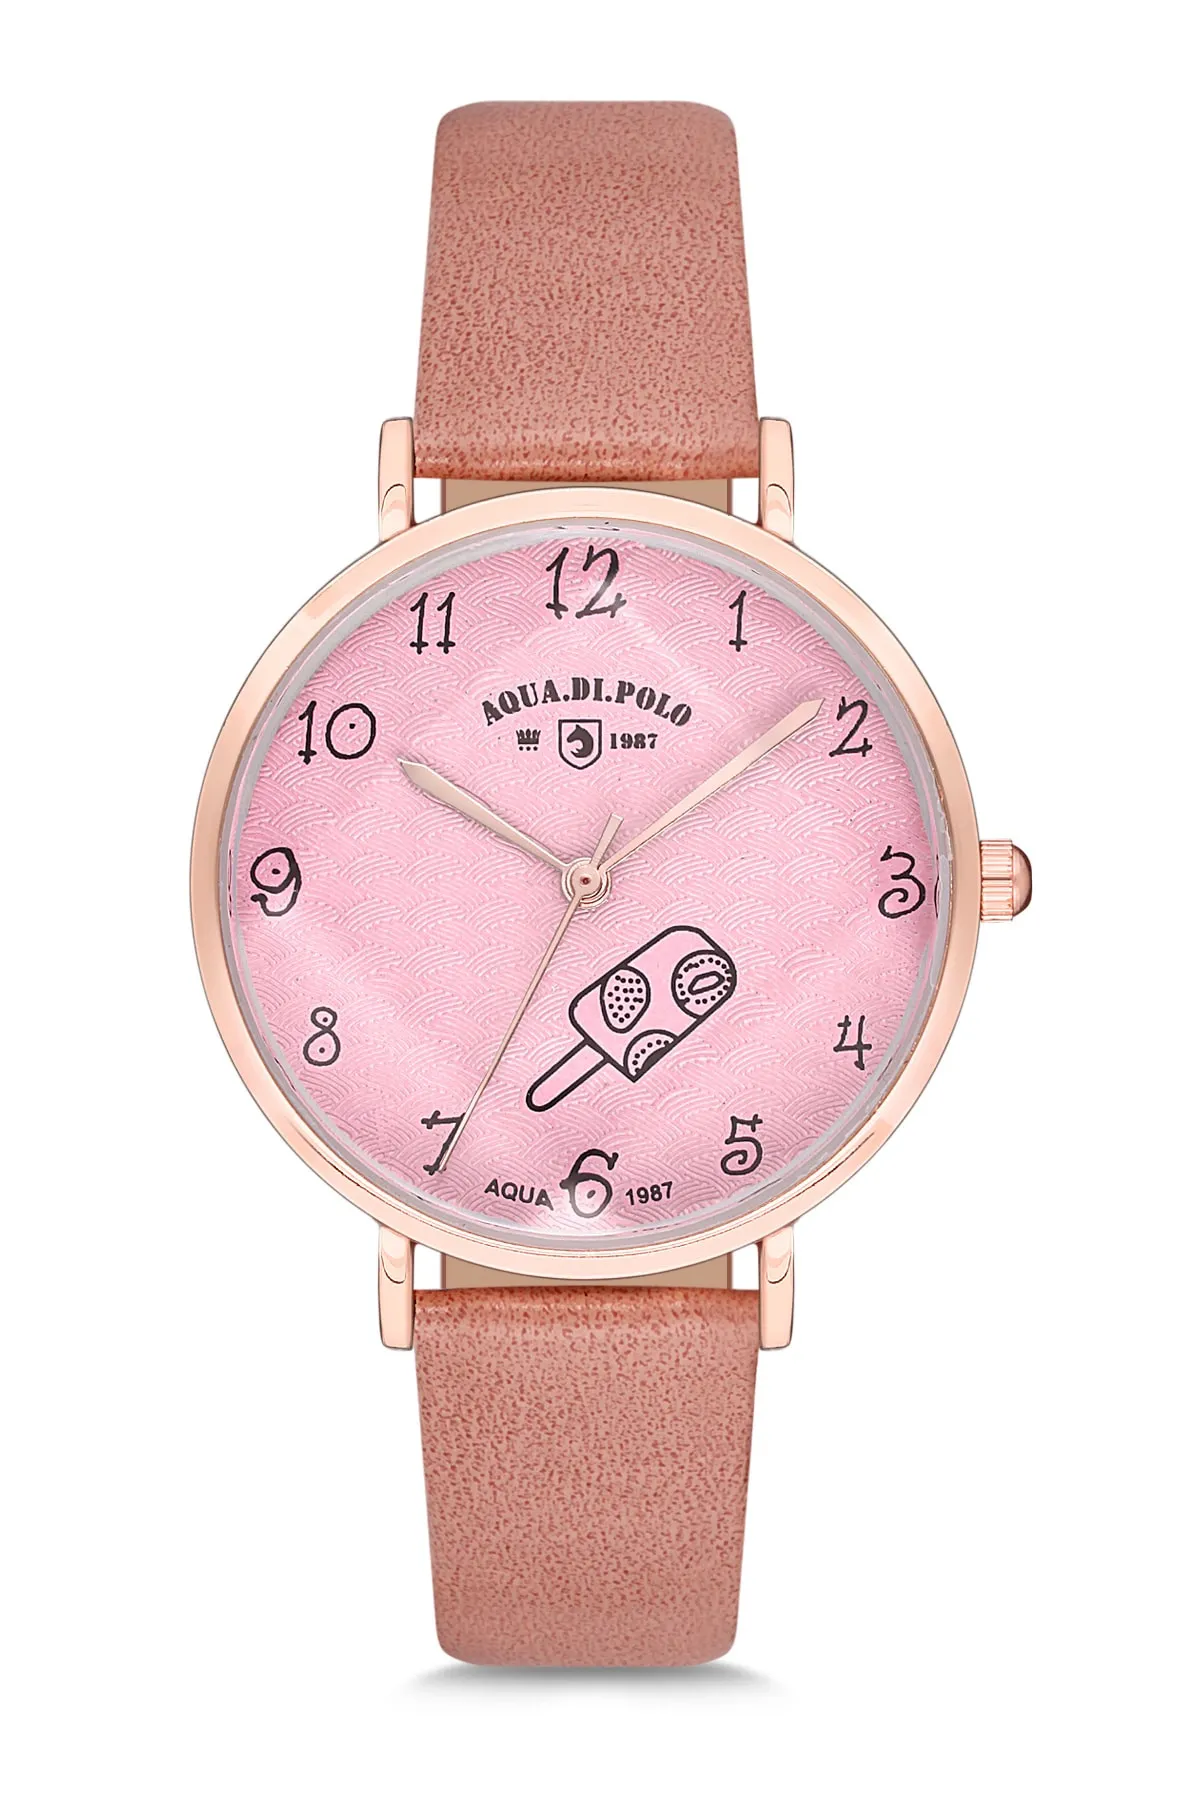 Кожаные женские наручные часы Di Polo apwa030202#1